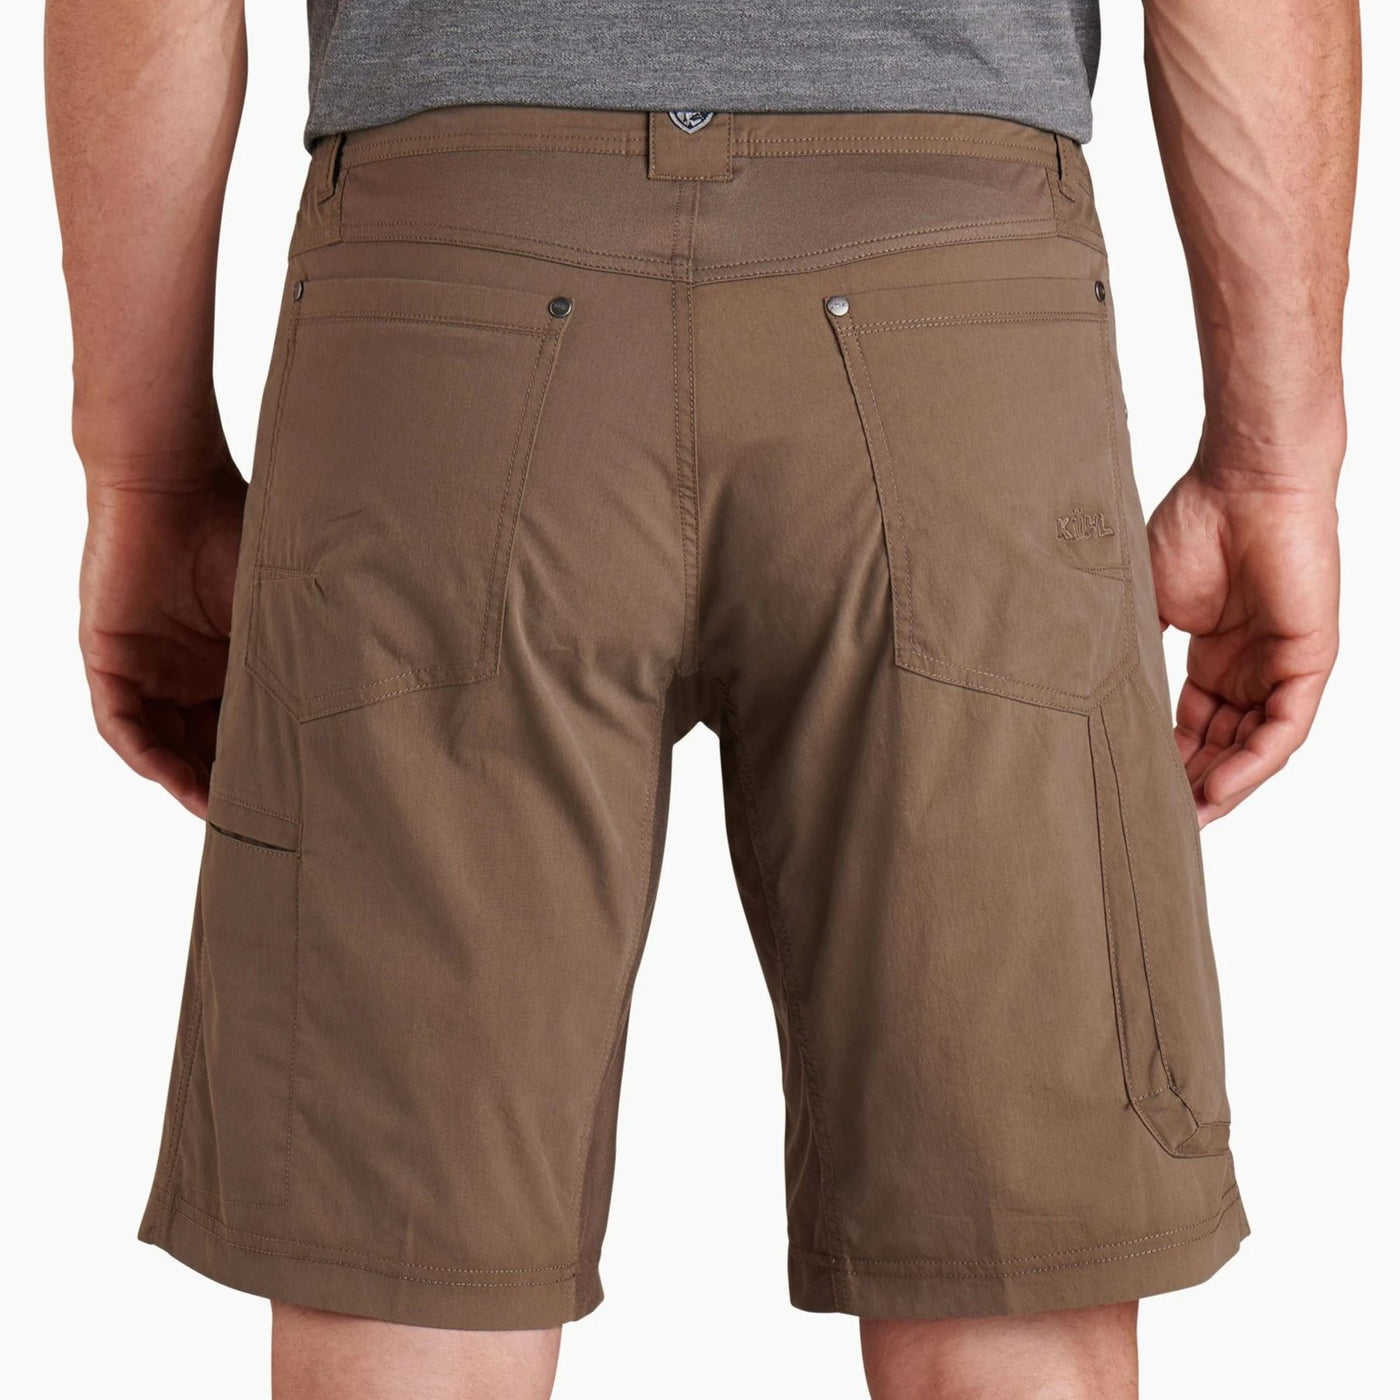 Kuhl Men's Radikl Short-MENS CLOTHING-Kuhl-Kevin's Fine Outdoor Gear & Apparel